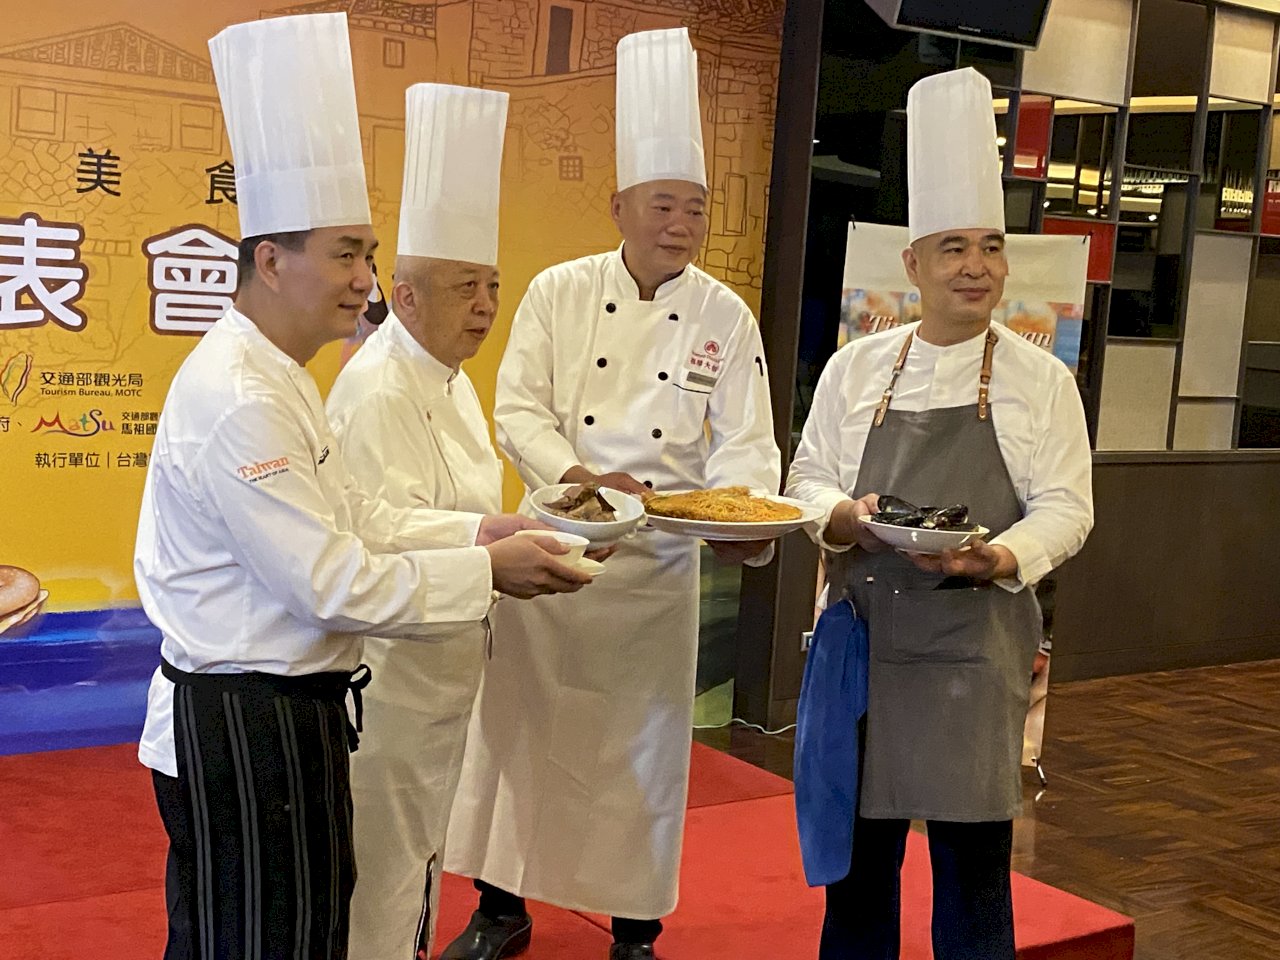 五星米其林4大名廚加持 打造國際級馬祖卡蹓美味